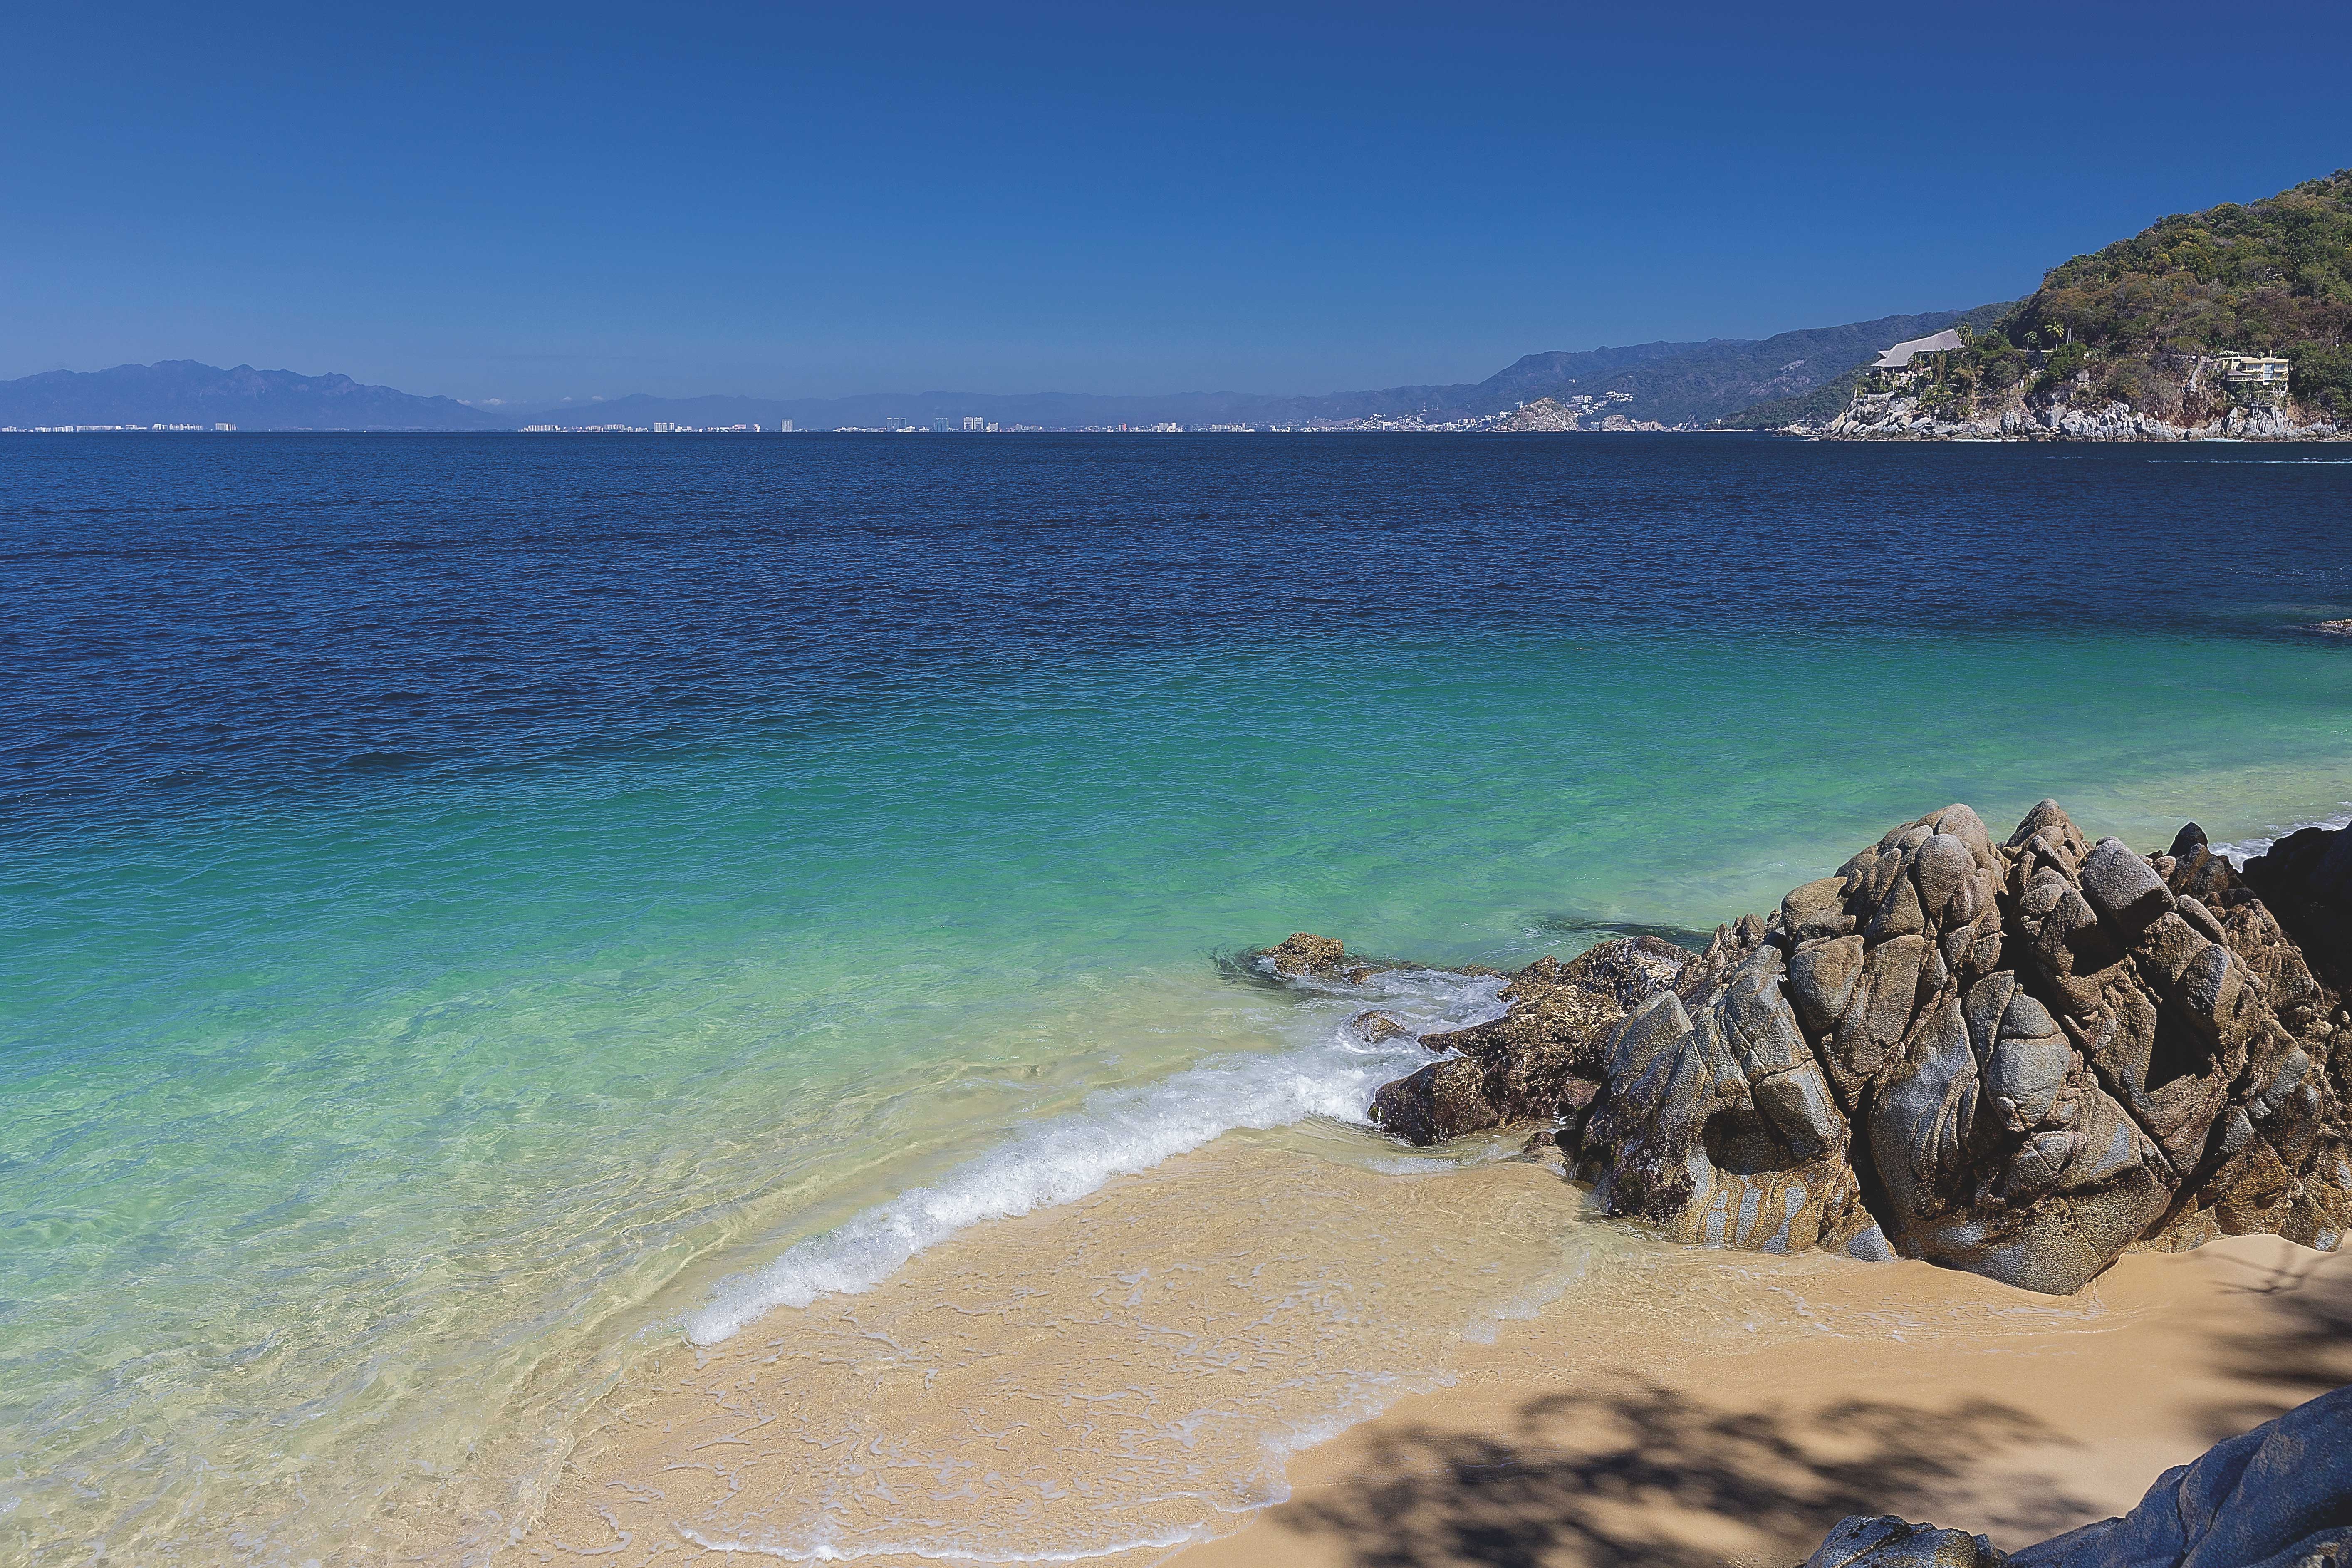 Excursions to the beach: 5 little-known paradises, vallarta lifestyles, puerto vallarta